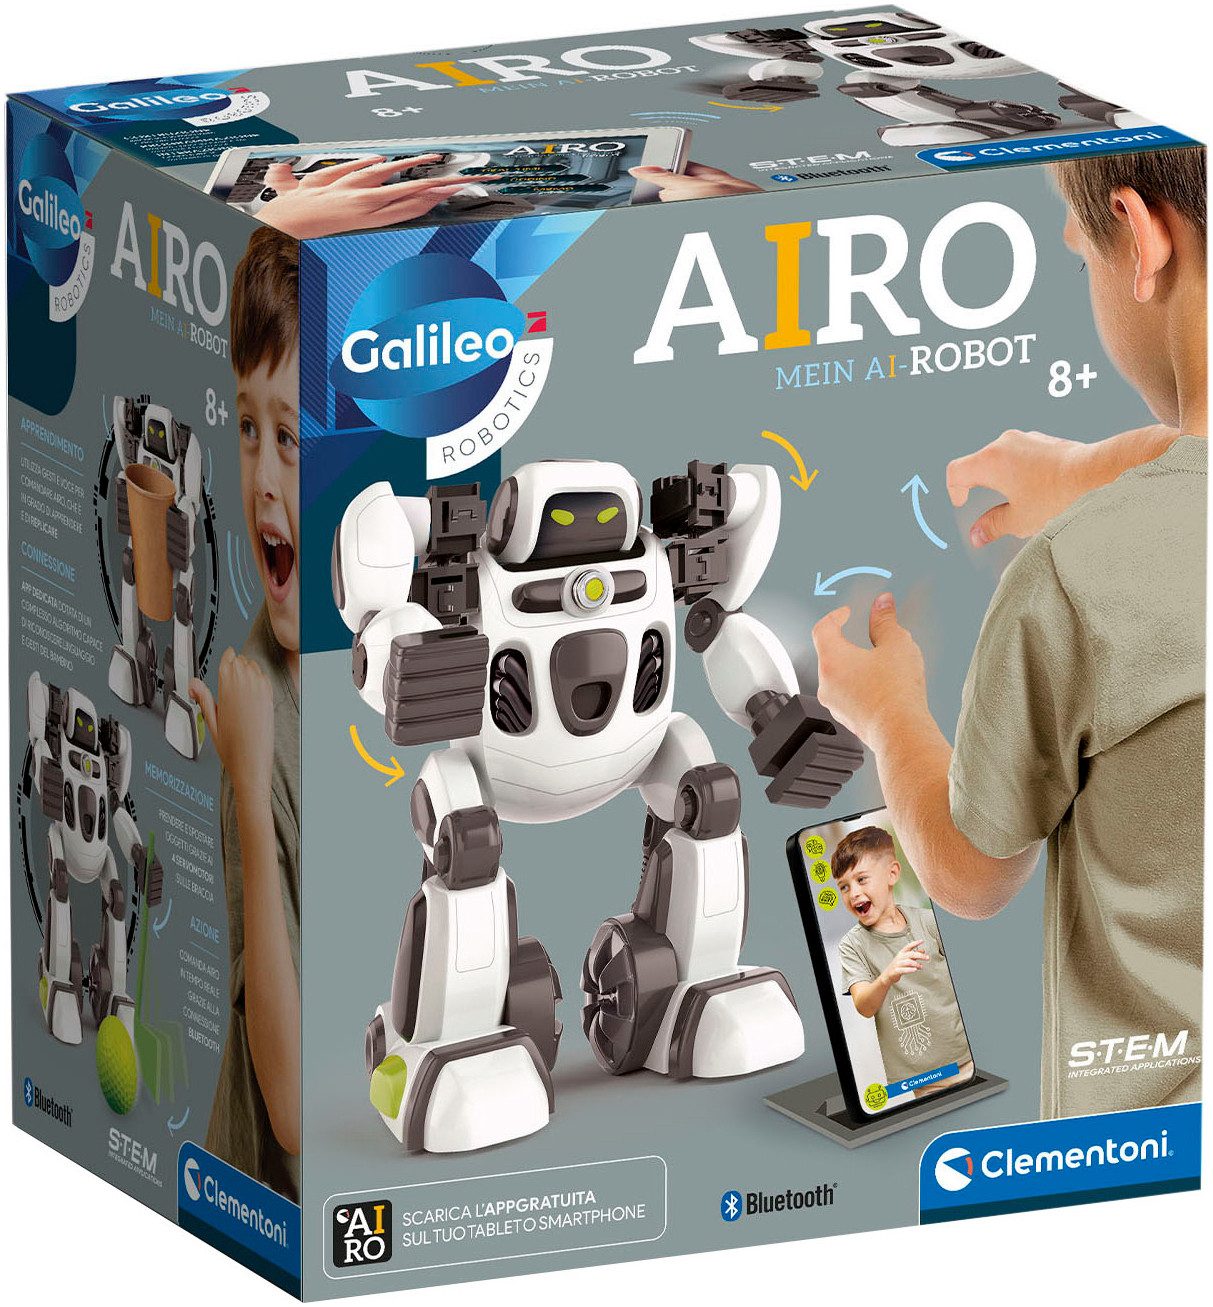 Clementoni® Roboter Galileo, AIRO - Mein interaktiver Roboter, Made in Europe; FSC® - schützt Wald - weltweit